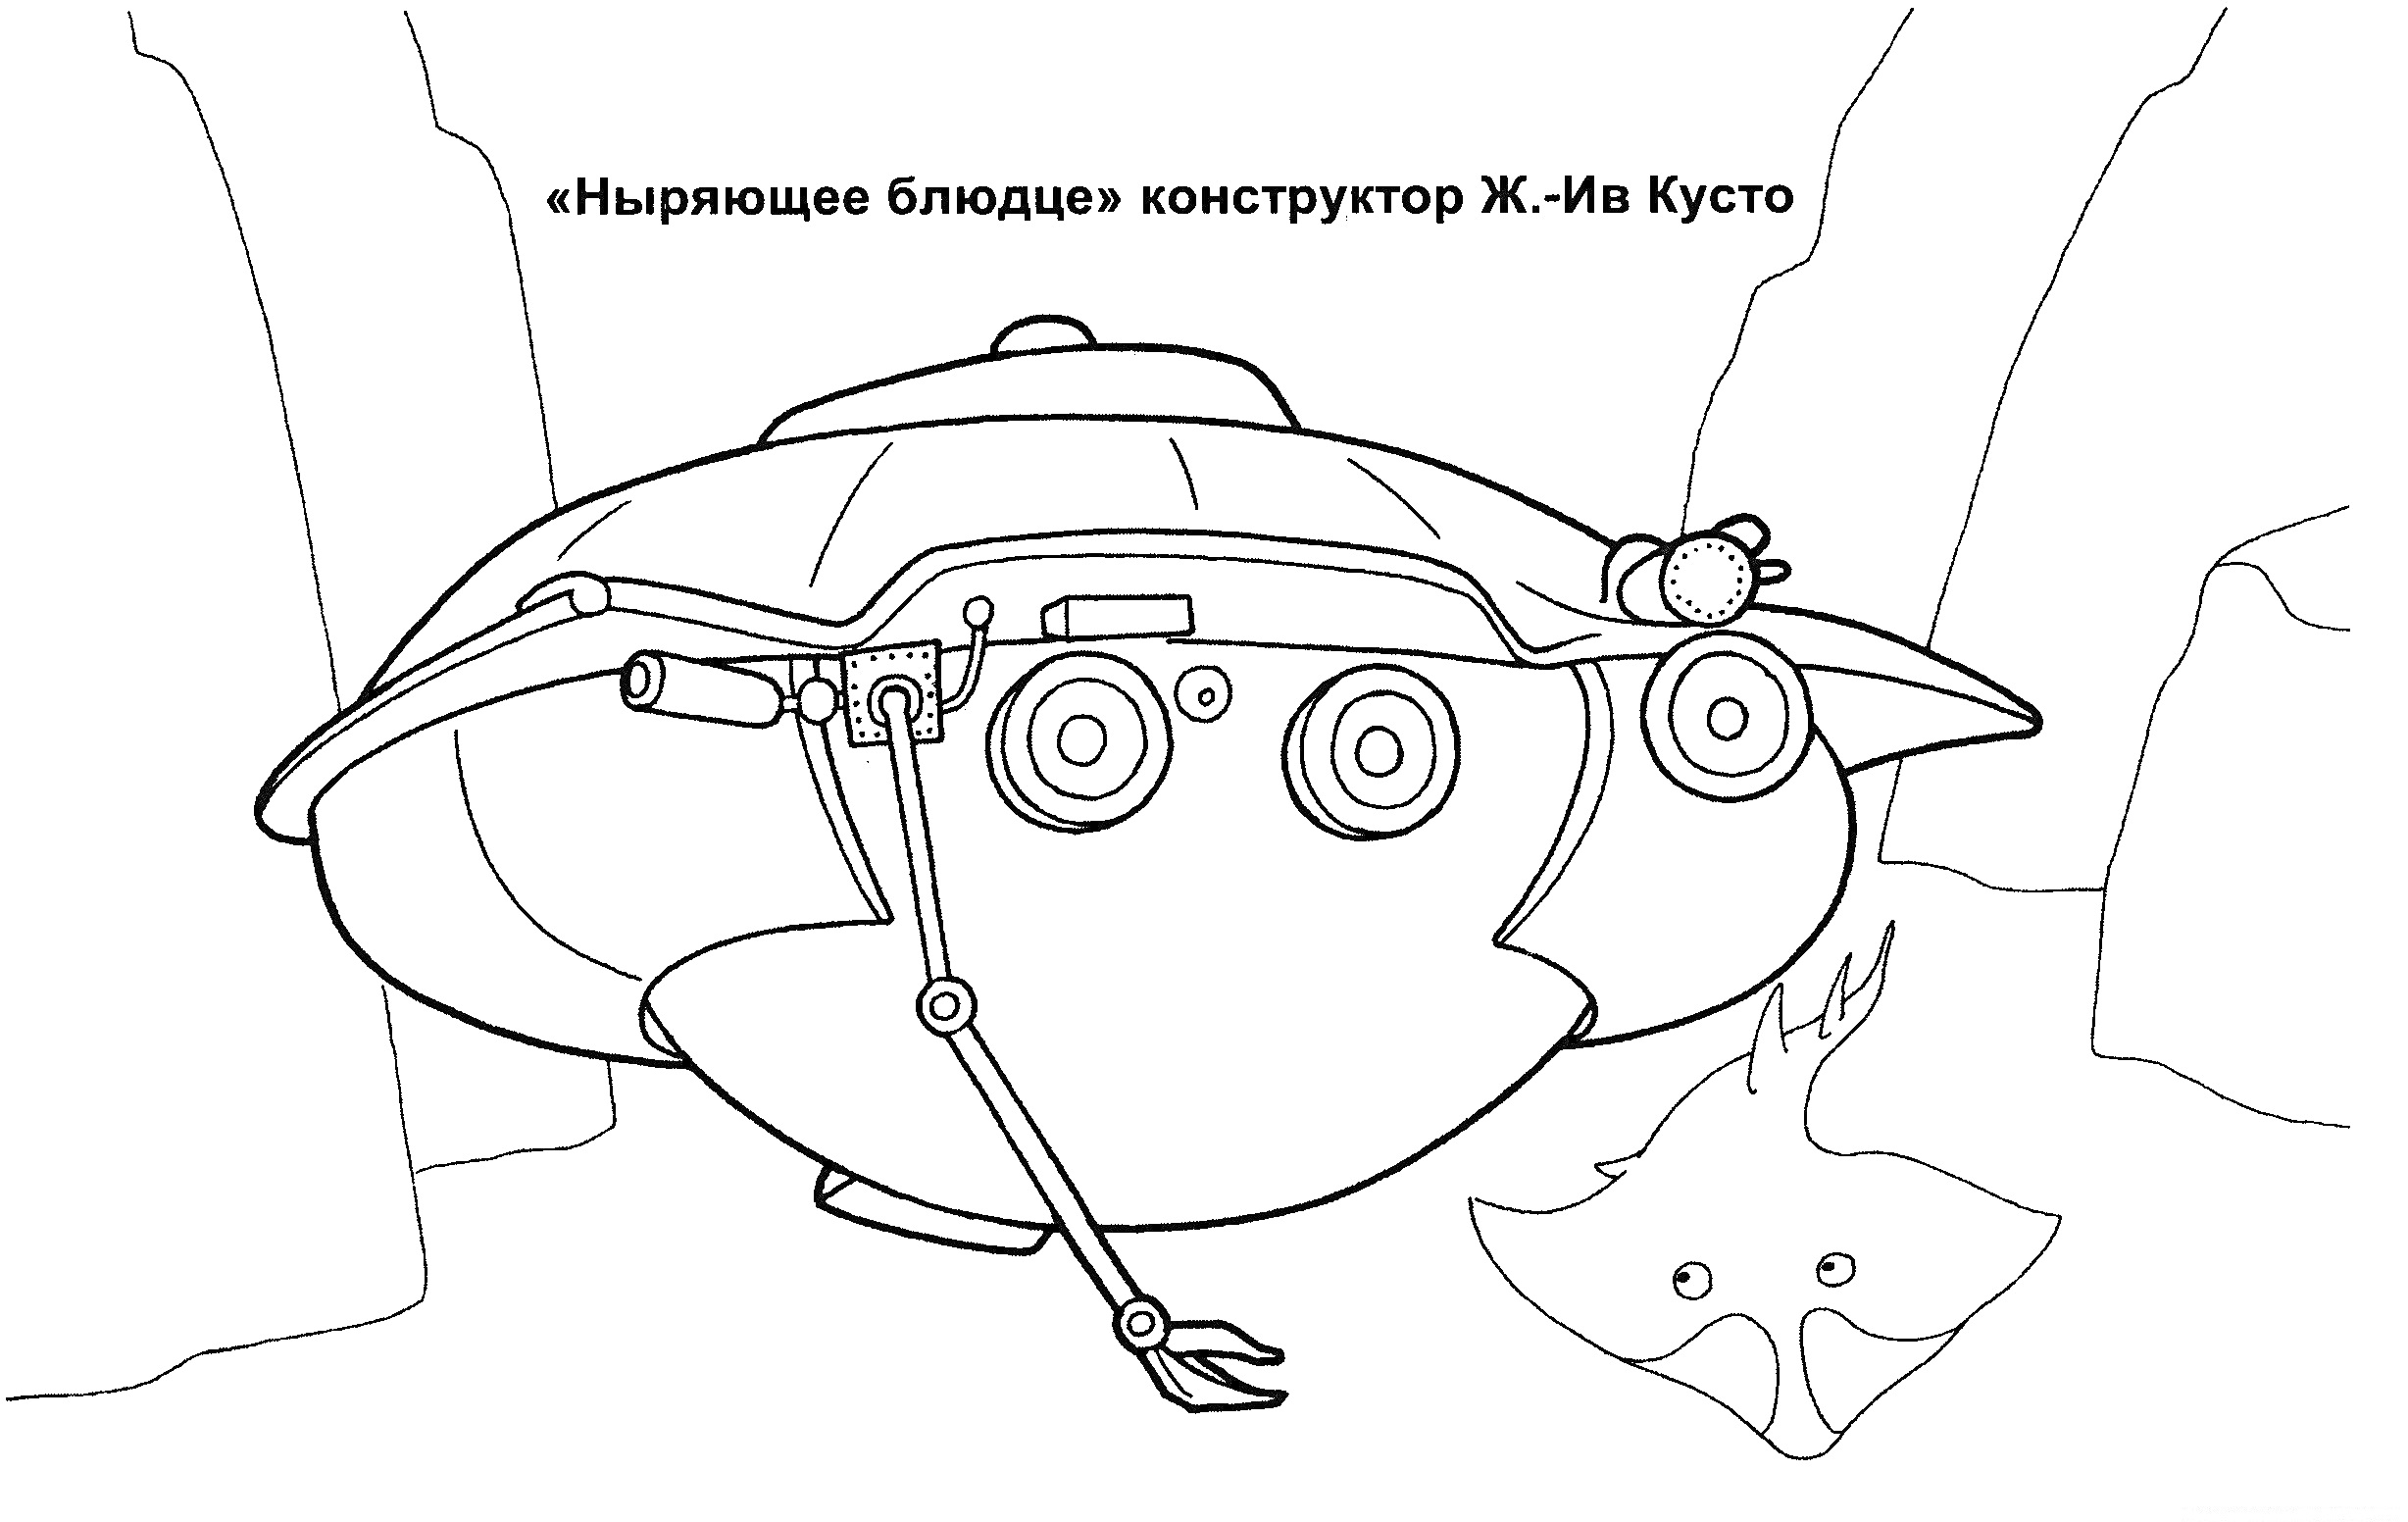 Ныряющее блюдце, подводный аппарат с манипулятором, осветительным прибором и иллюминаторами, скат